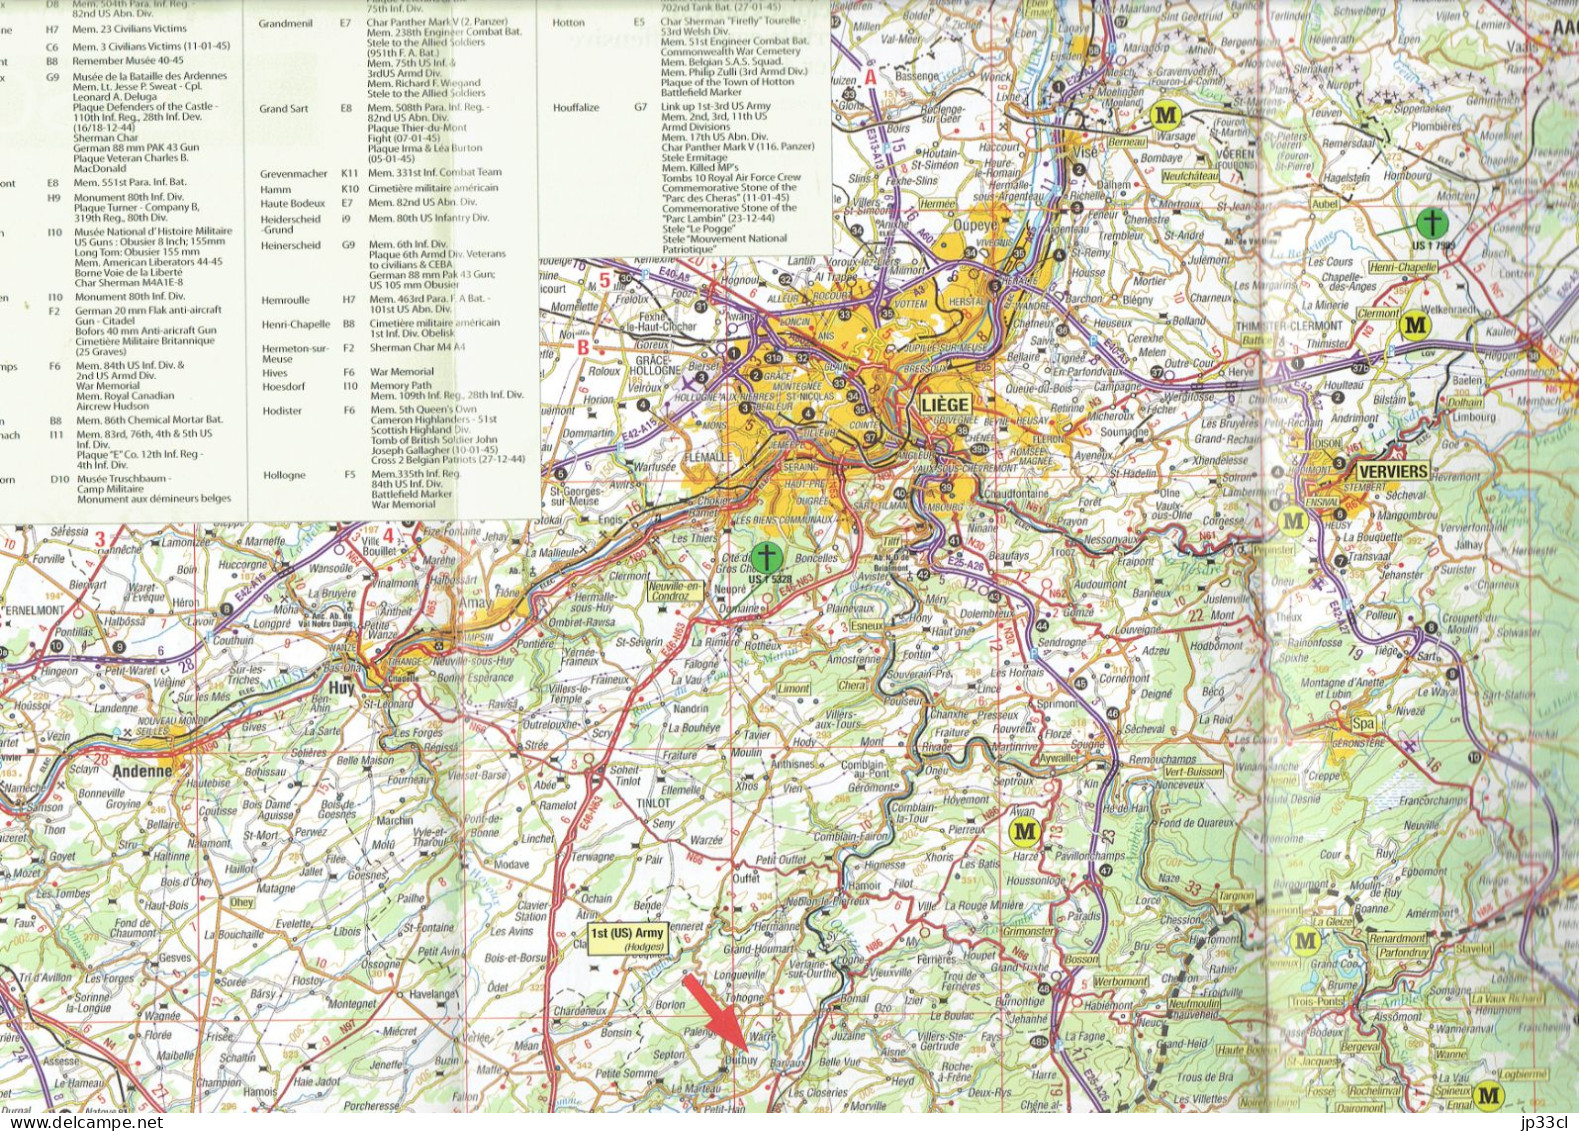 Carte Routière Des Hauts Lieux De La Bataille Des Ardennes (1944-45) - Cartes Géographiques